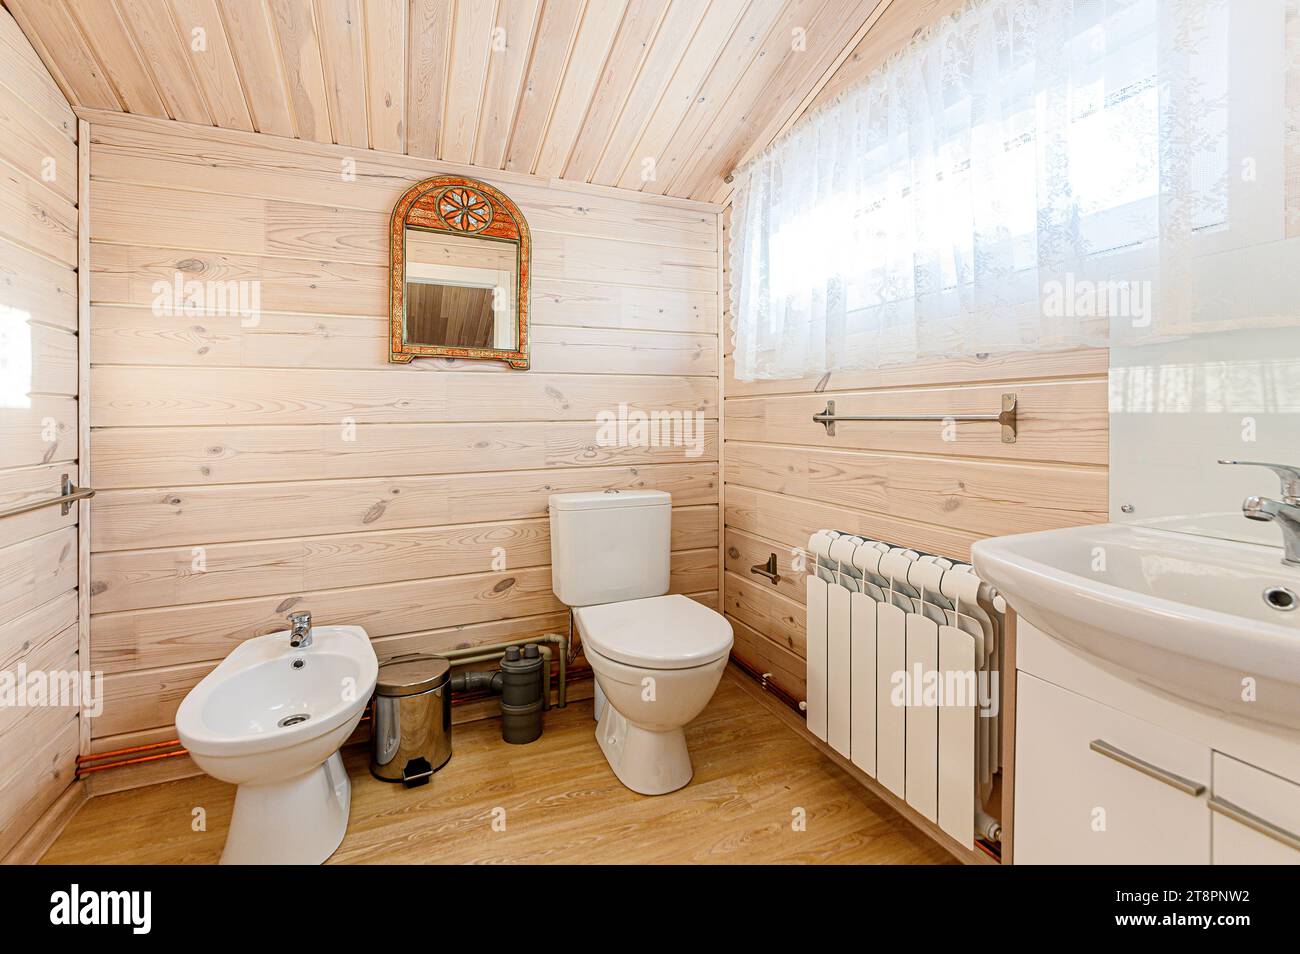 salle de bain intérieure appartement, lavabo, éléments décoratifs, wc Banque D'Images